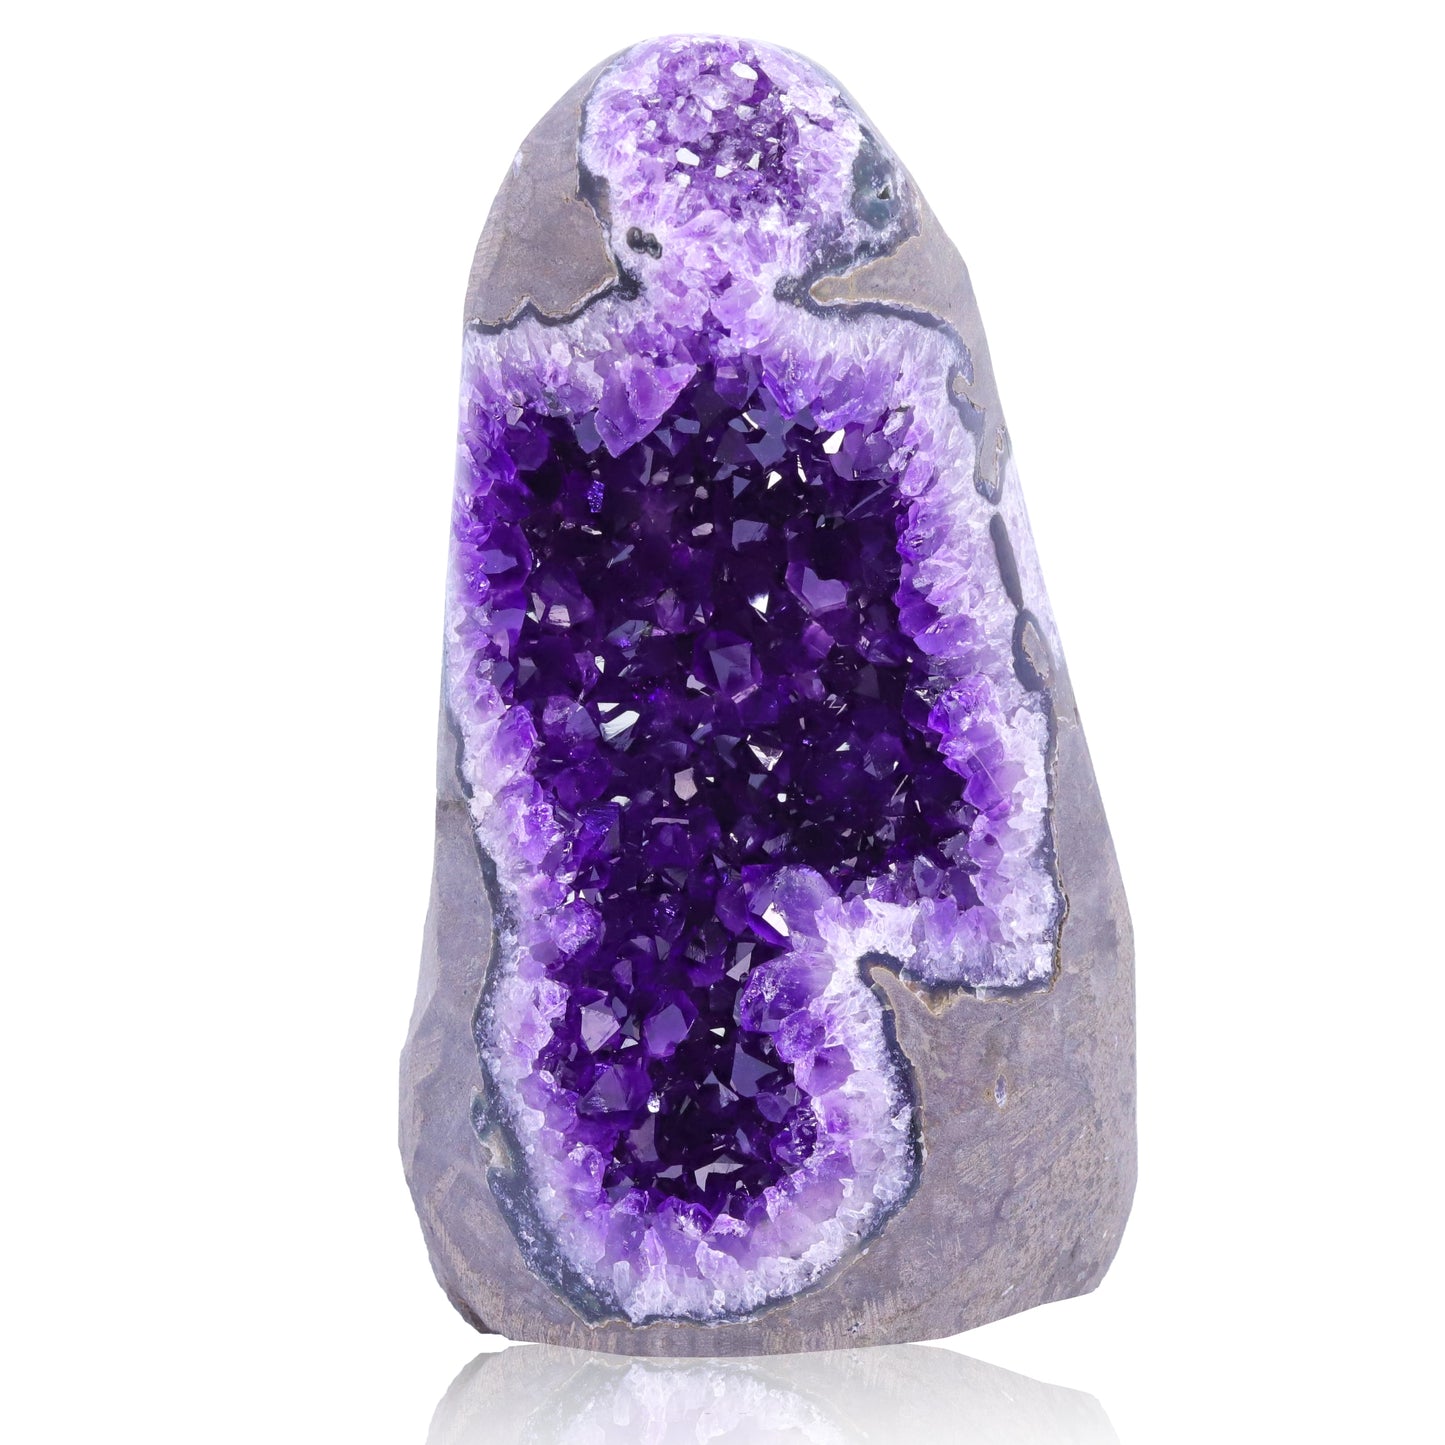 Natural Amethyst Geode Crystal Quartz Cluster Dream Specimen Energy Healing Thunder Egg Wholesale